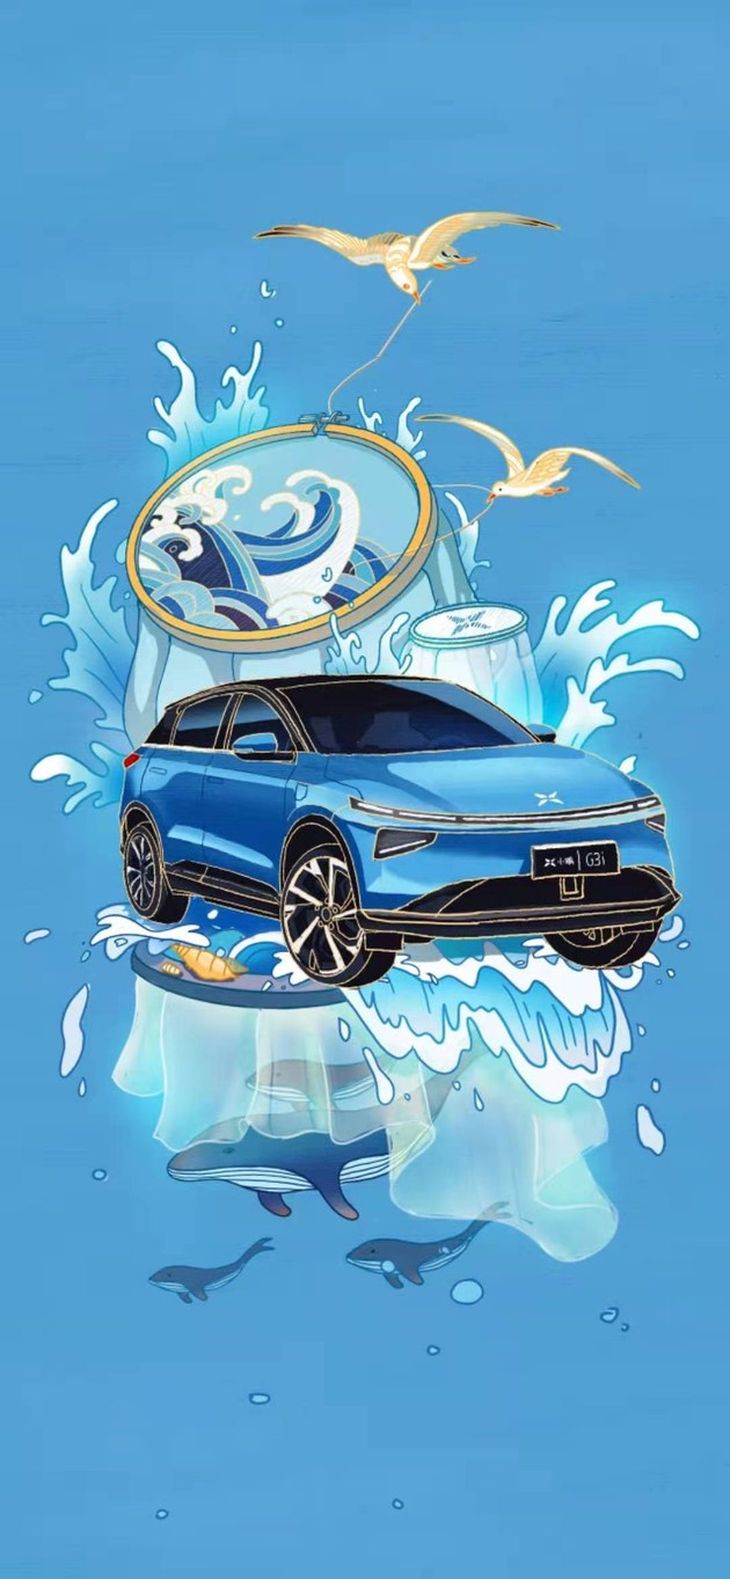 小鹏G3i五种车身颜色发布 将于7月9日正式上市